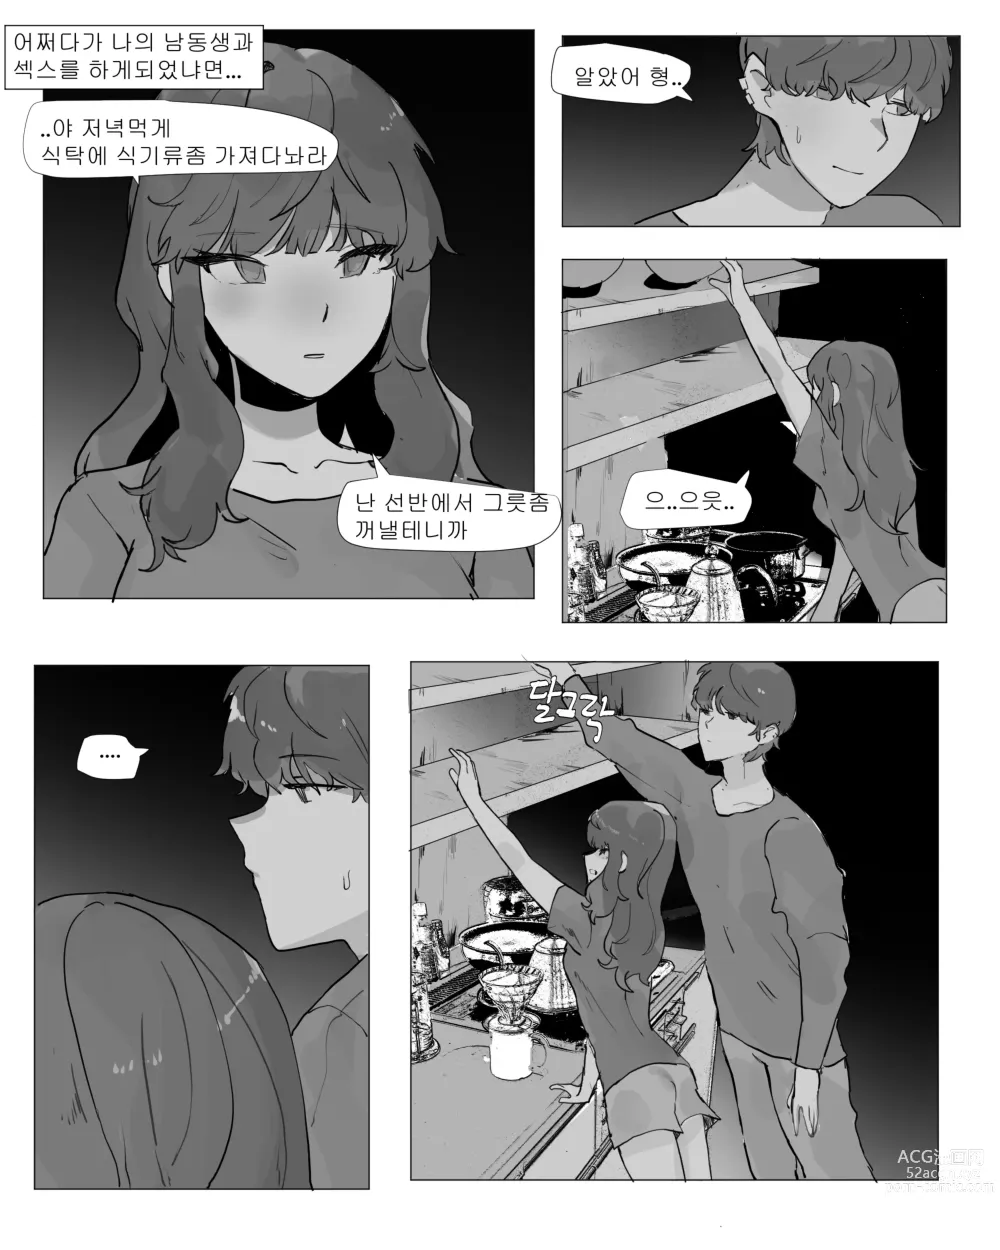 Page 3 of doujinshi 어느날 나는 TS 되었다 -1